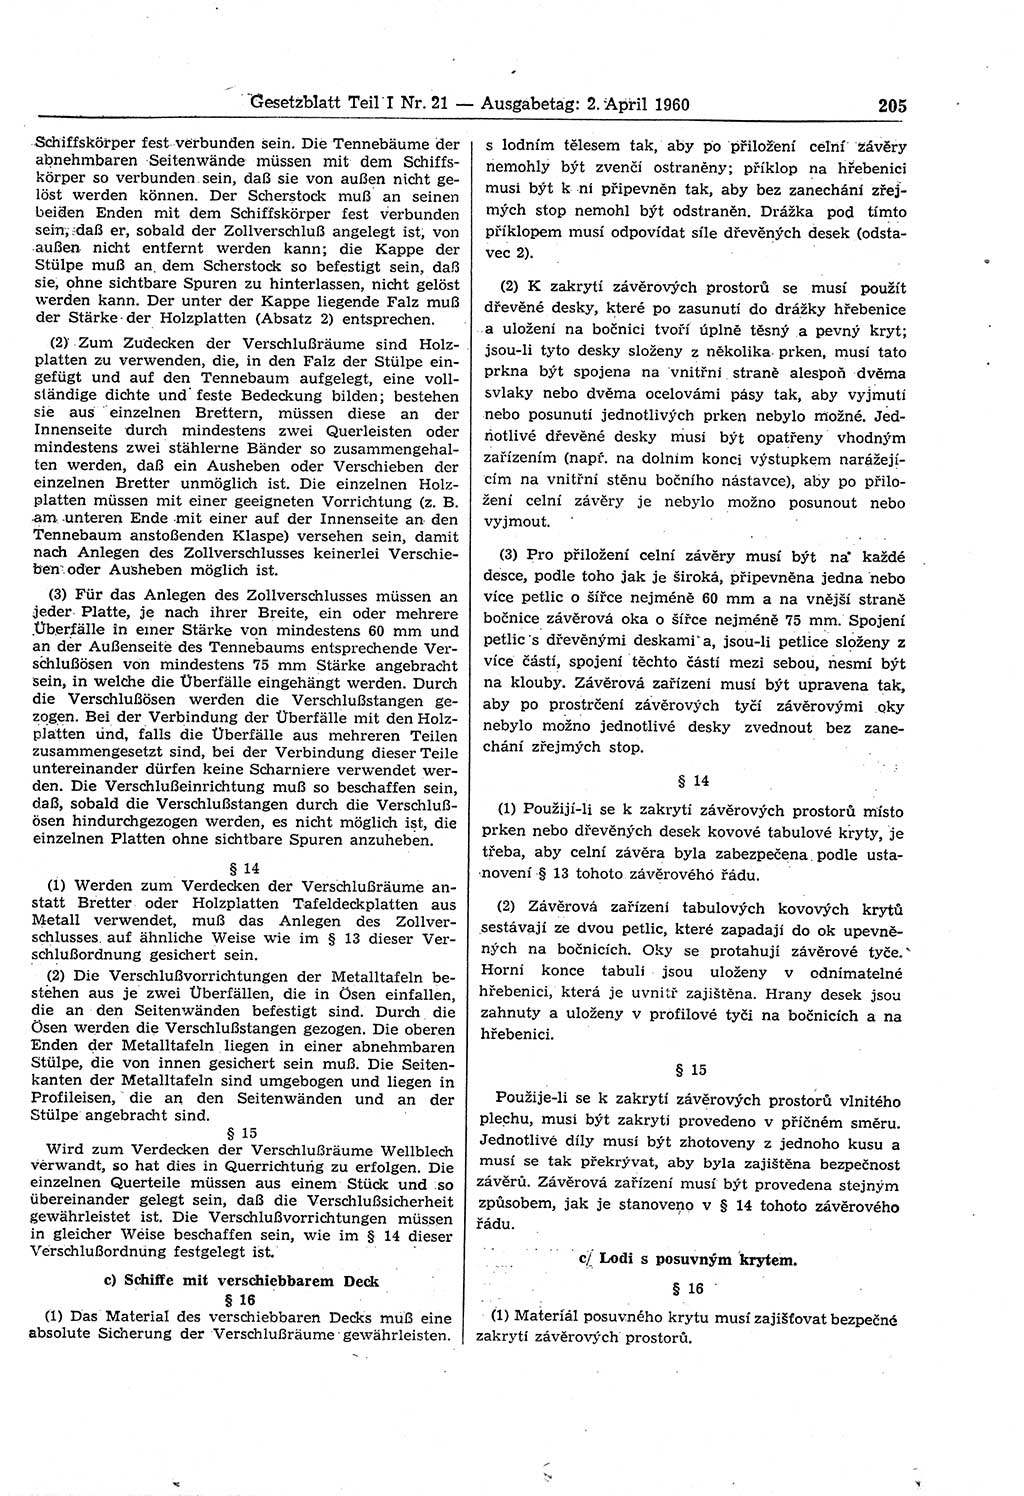 Gesetzblatt (GBl.) der Deutschen Demokratischen Republik (DDR) Teil Ⅰ 1960, Seite 205 (GBl. DDR Ⅰ 1960, S. 205)